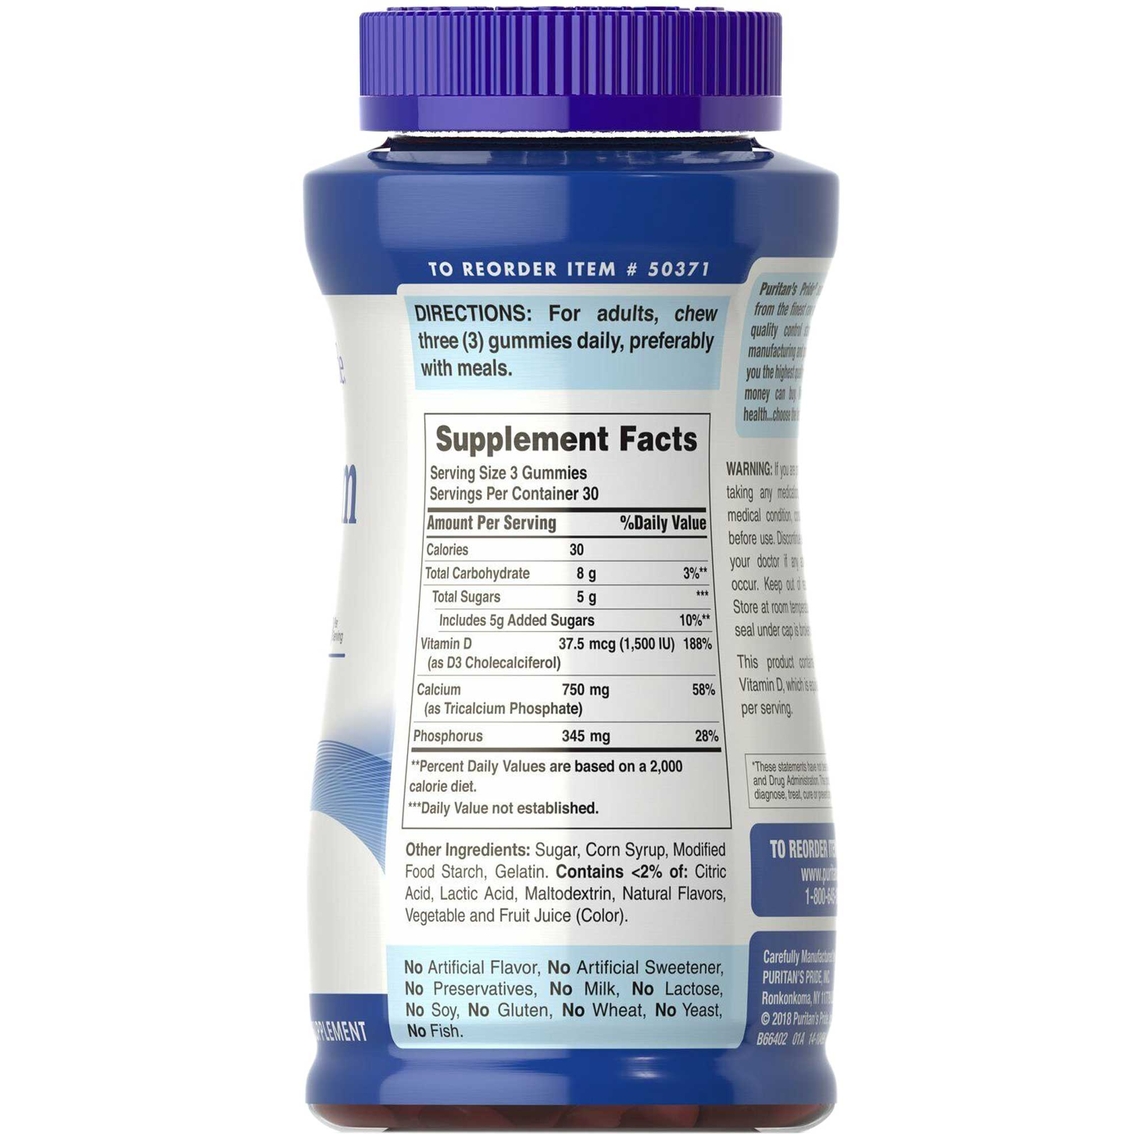 Puritan's Pride Calcium 750 mg Plus Vitamin D 375mcg 1500 IU Gummies 90 ct. - Image 2 of 2